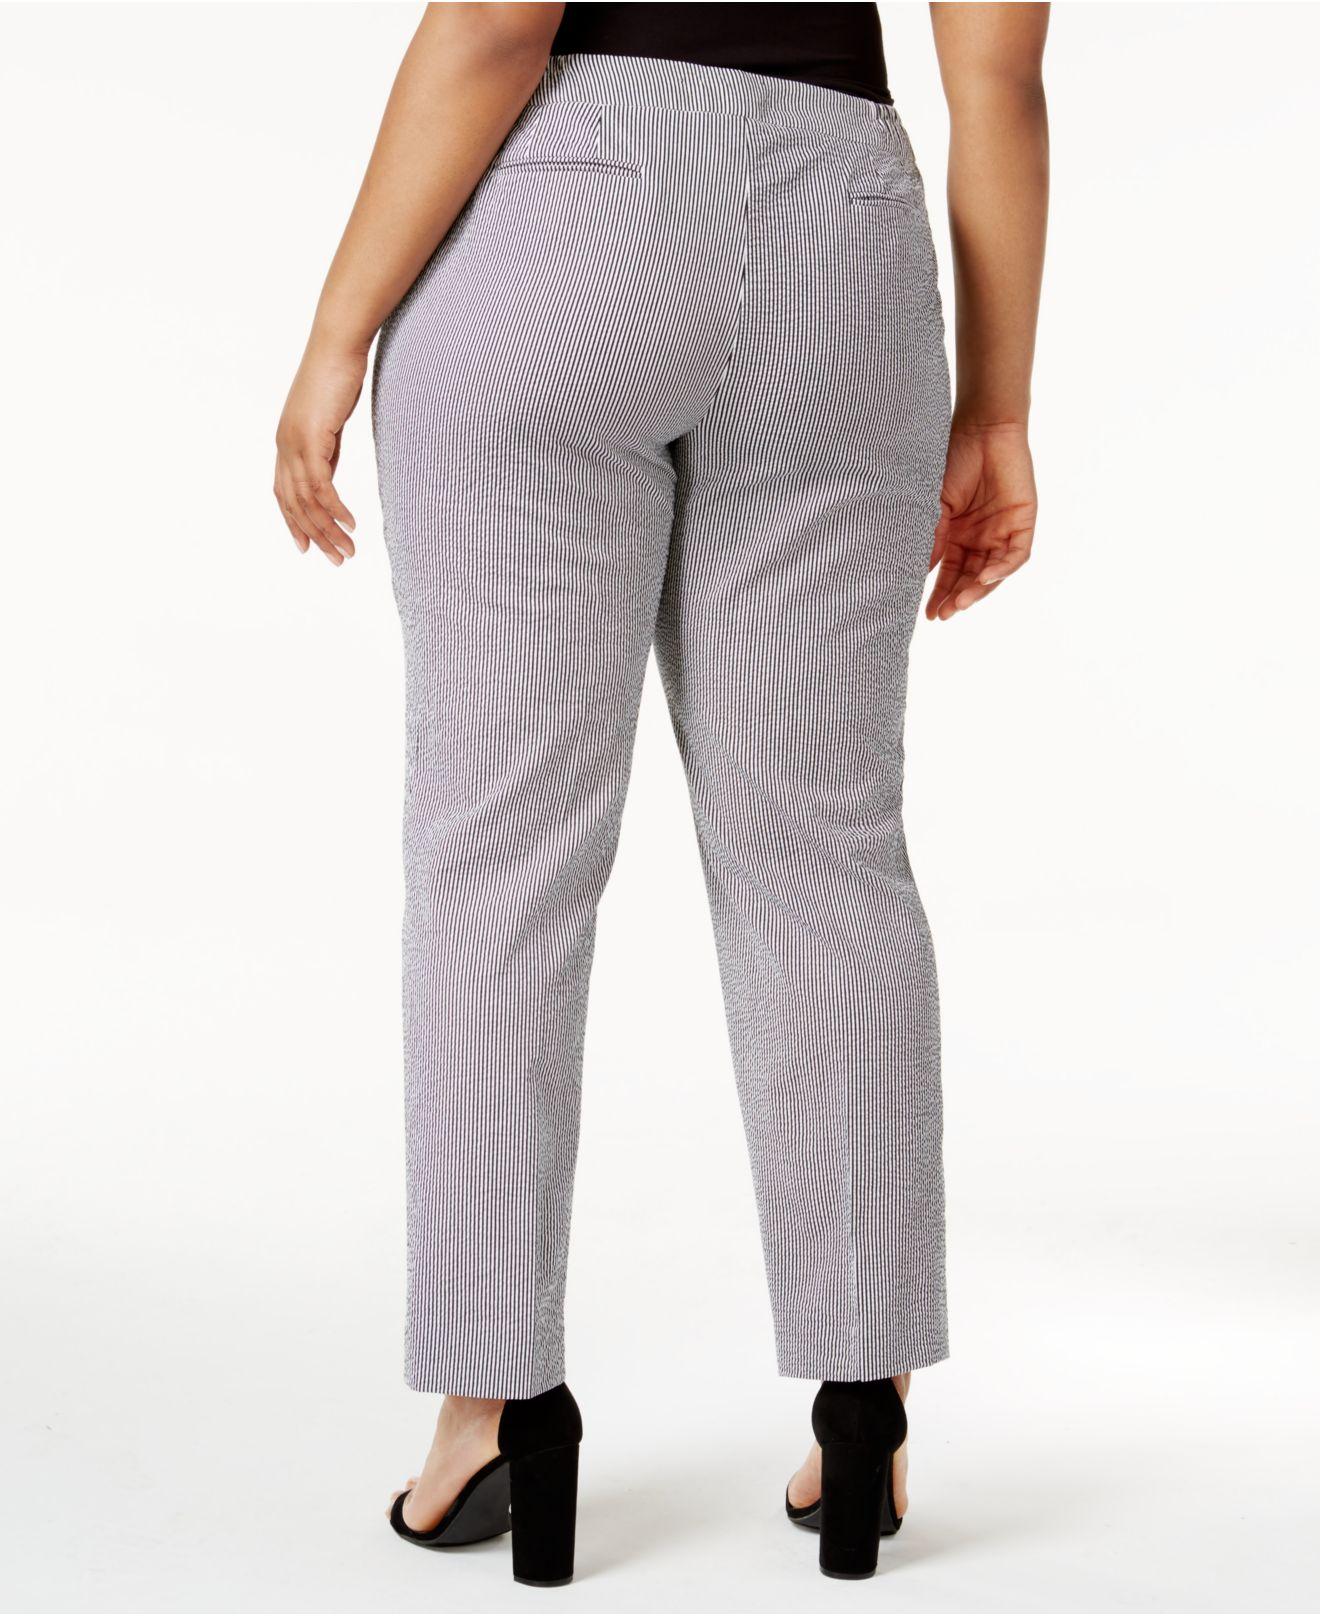 Lyst - Anne klein Plus Size Striped Seersucker Pants in Gray